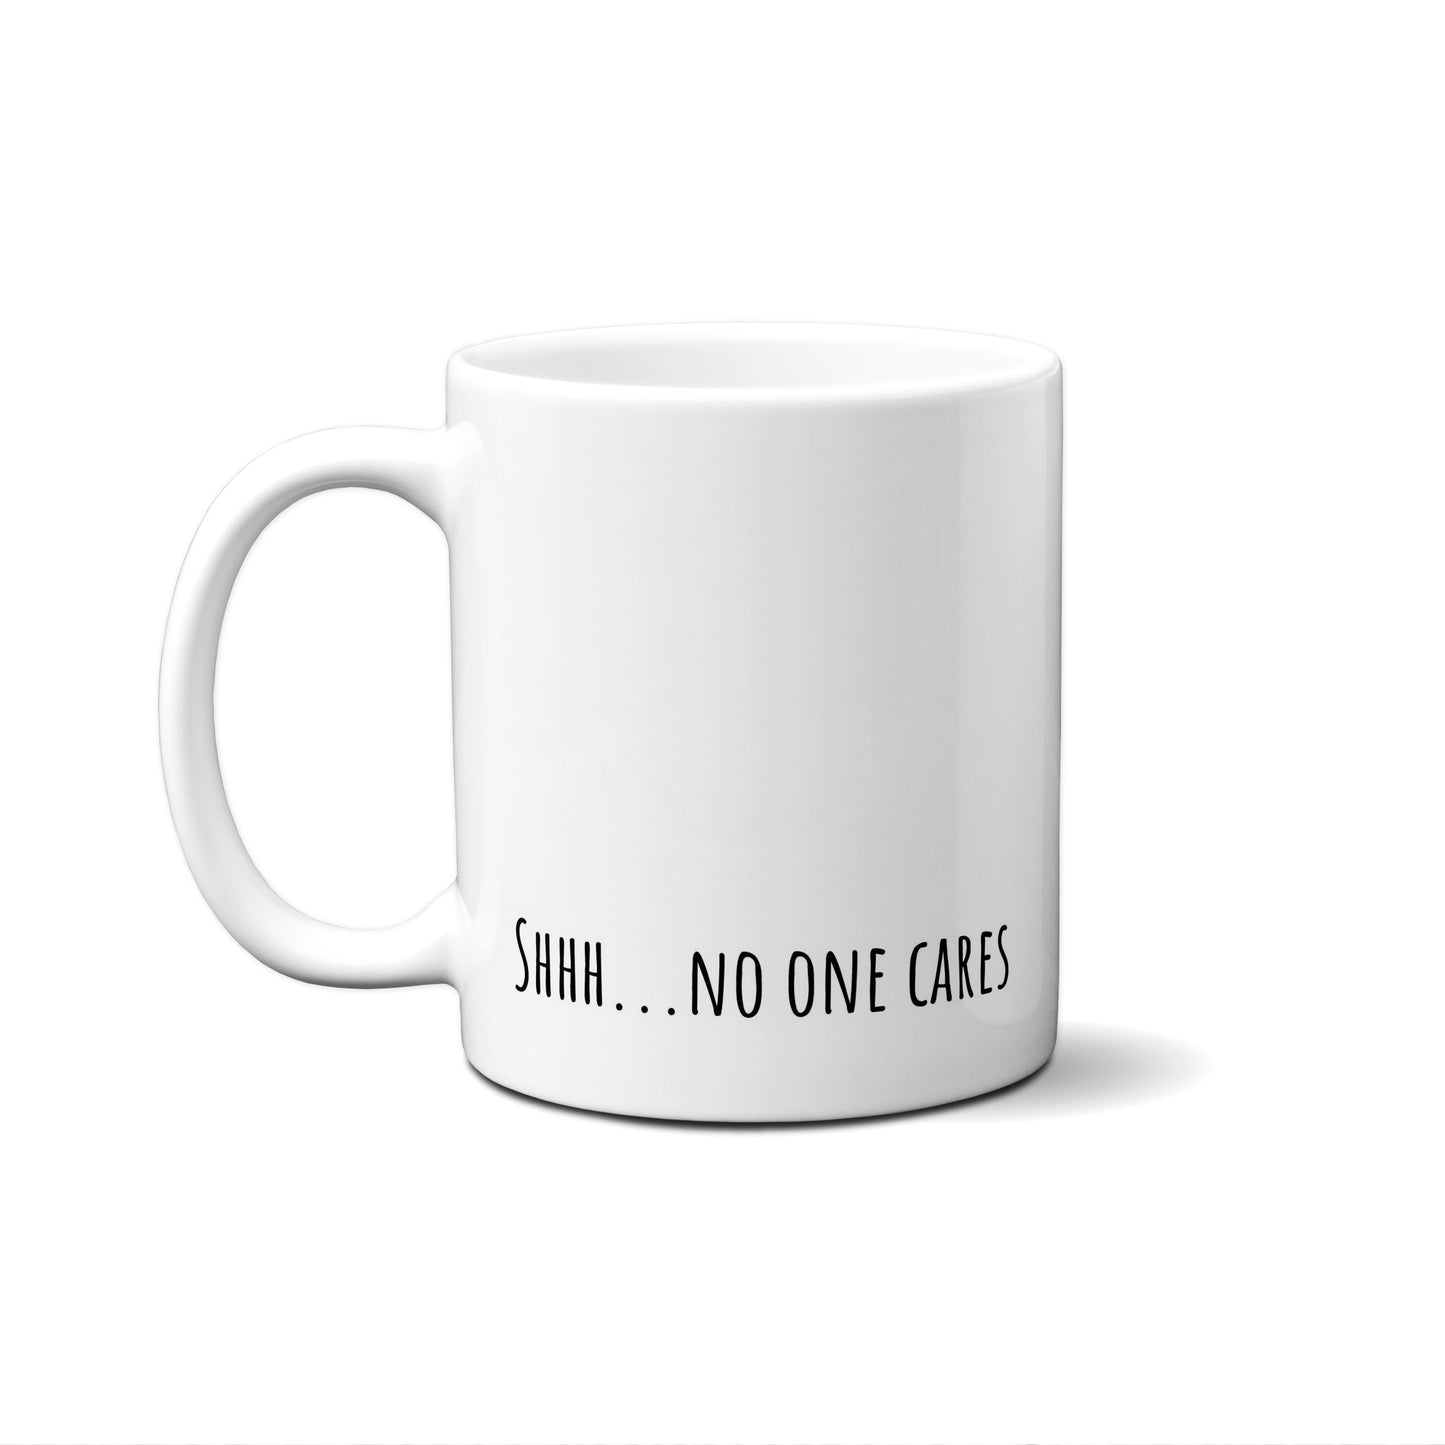 Shhh...No One Cares Quote Mug